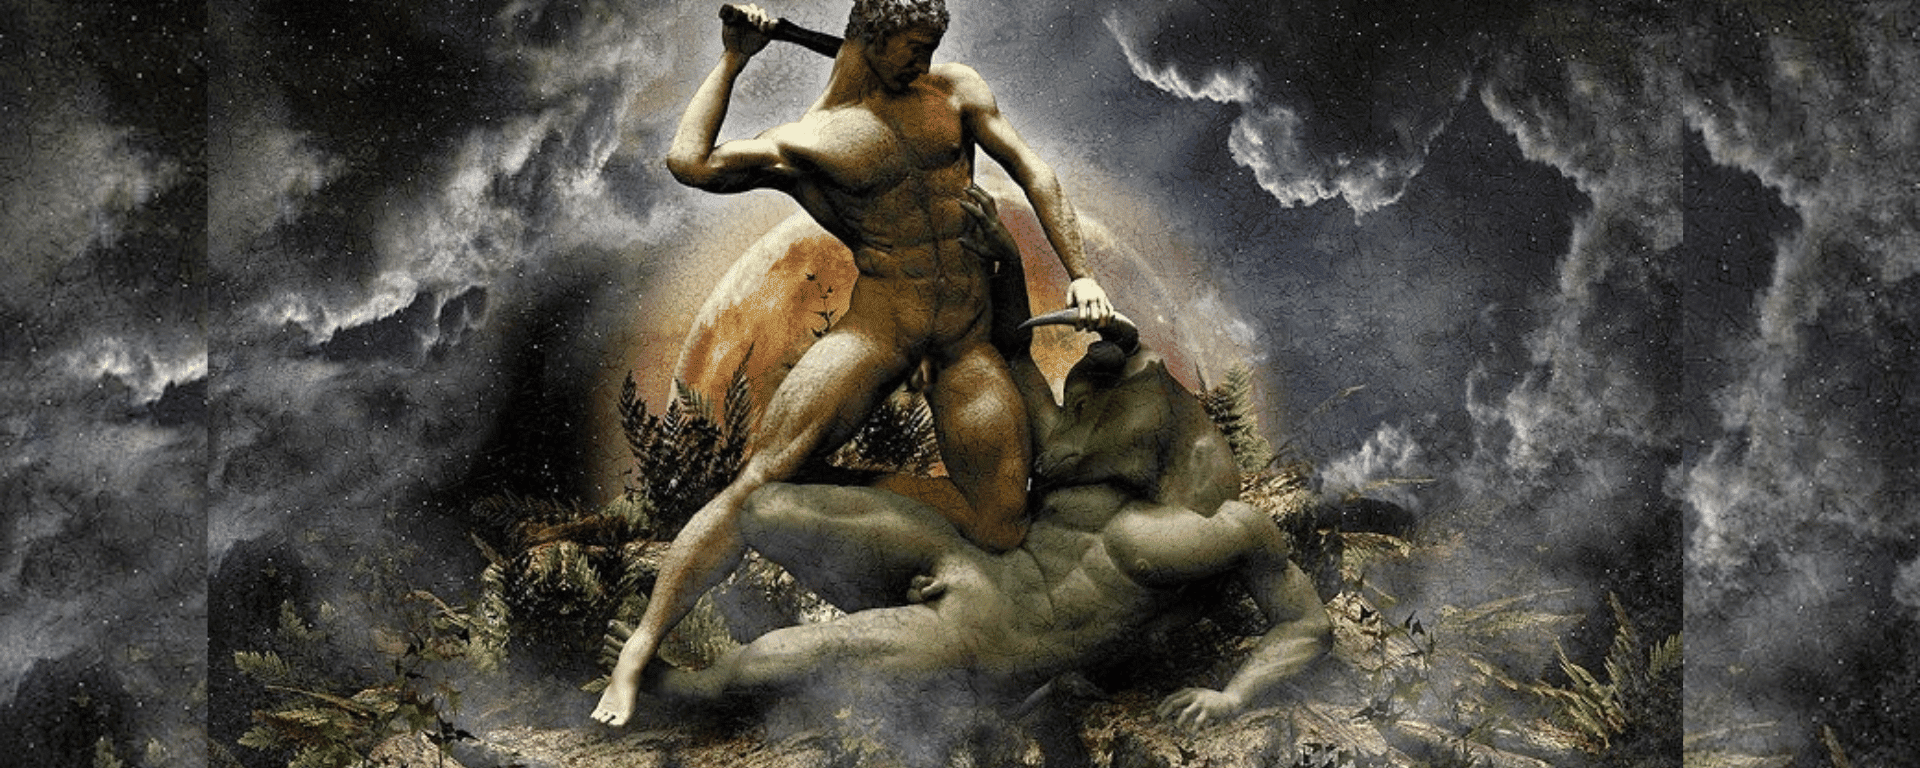 O Mito de Teseu e o Minotauro